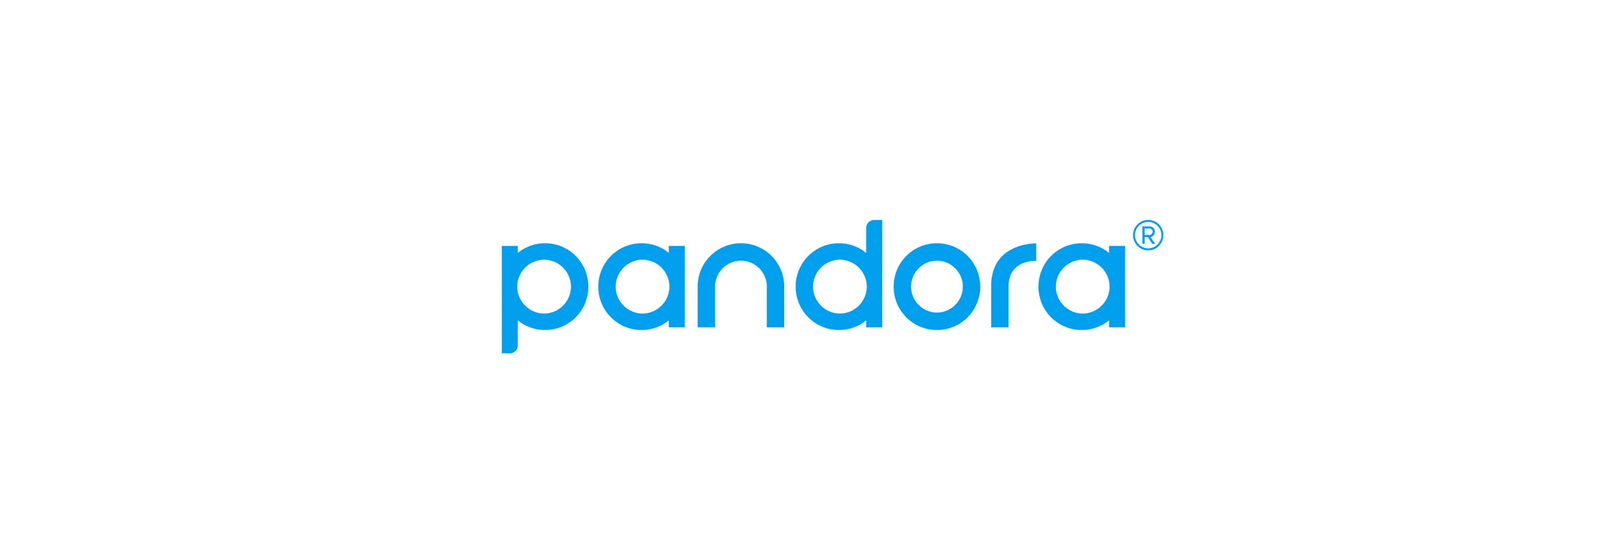 Logo pandora music